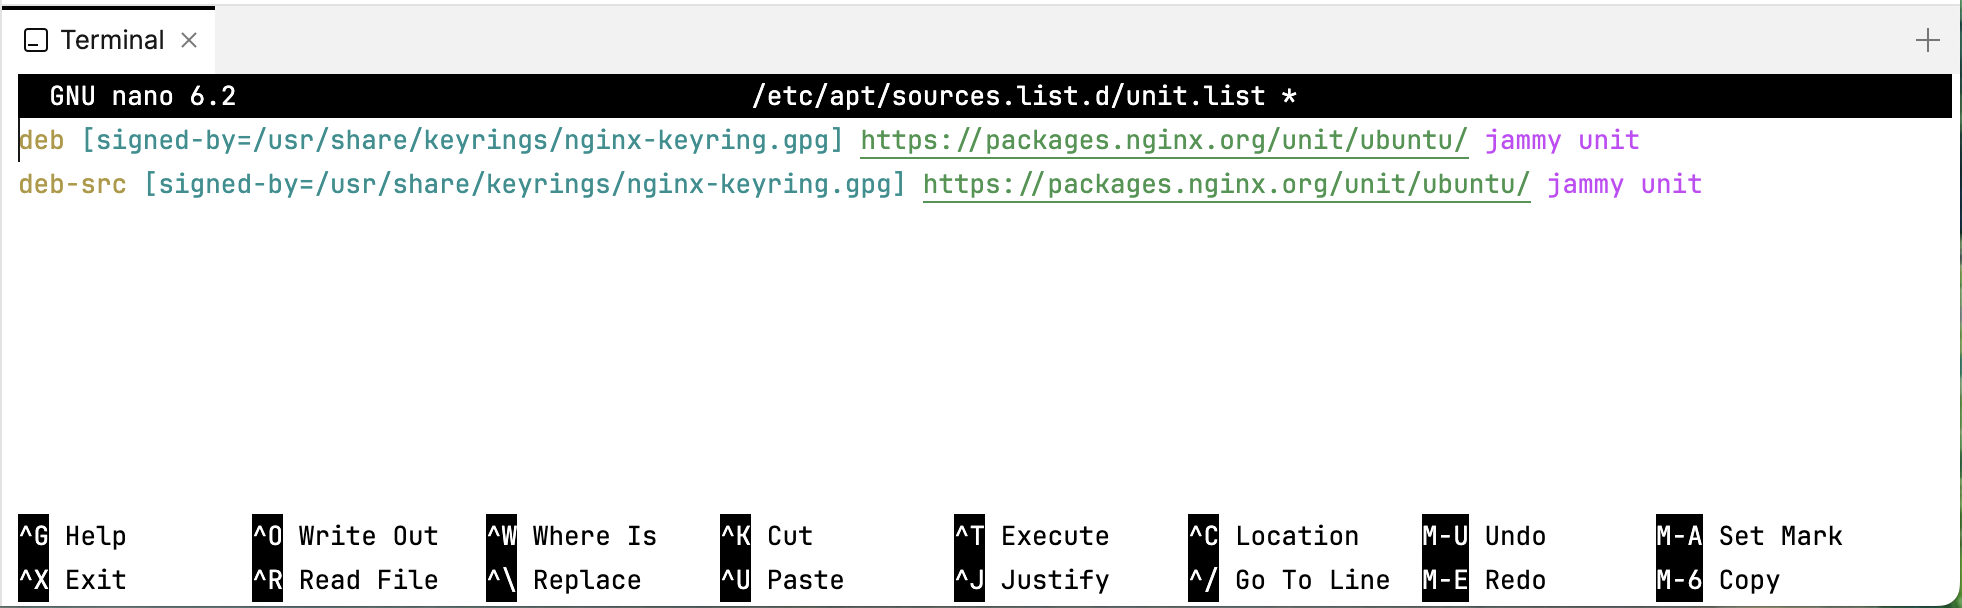 Репозитории для Nginx Unit для версии Ubuntu 22.04